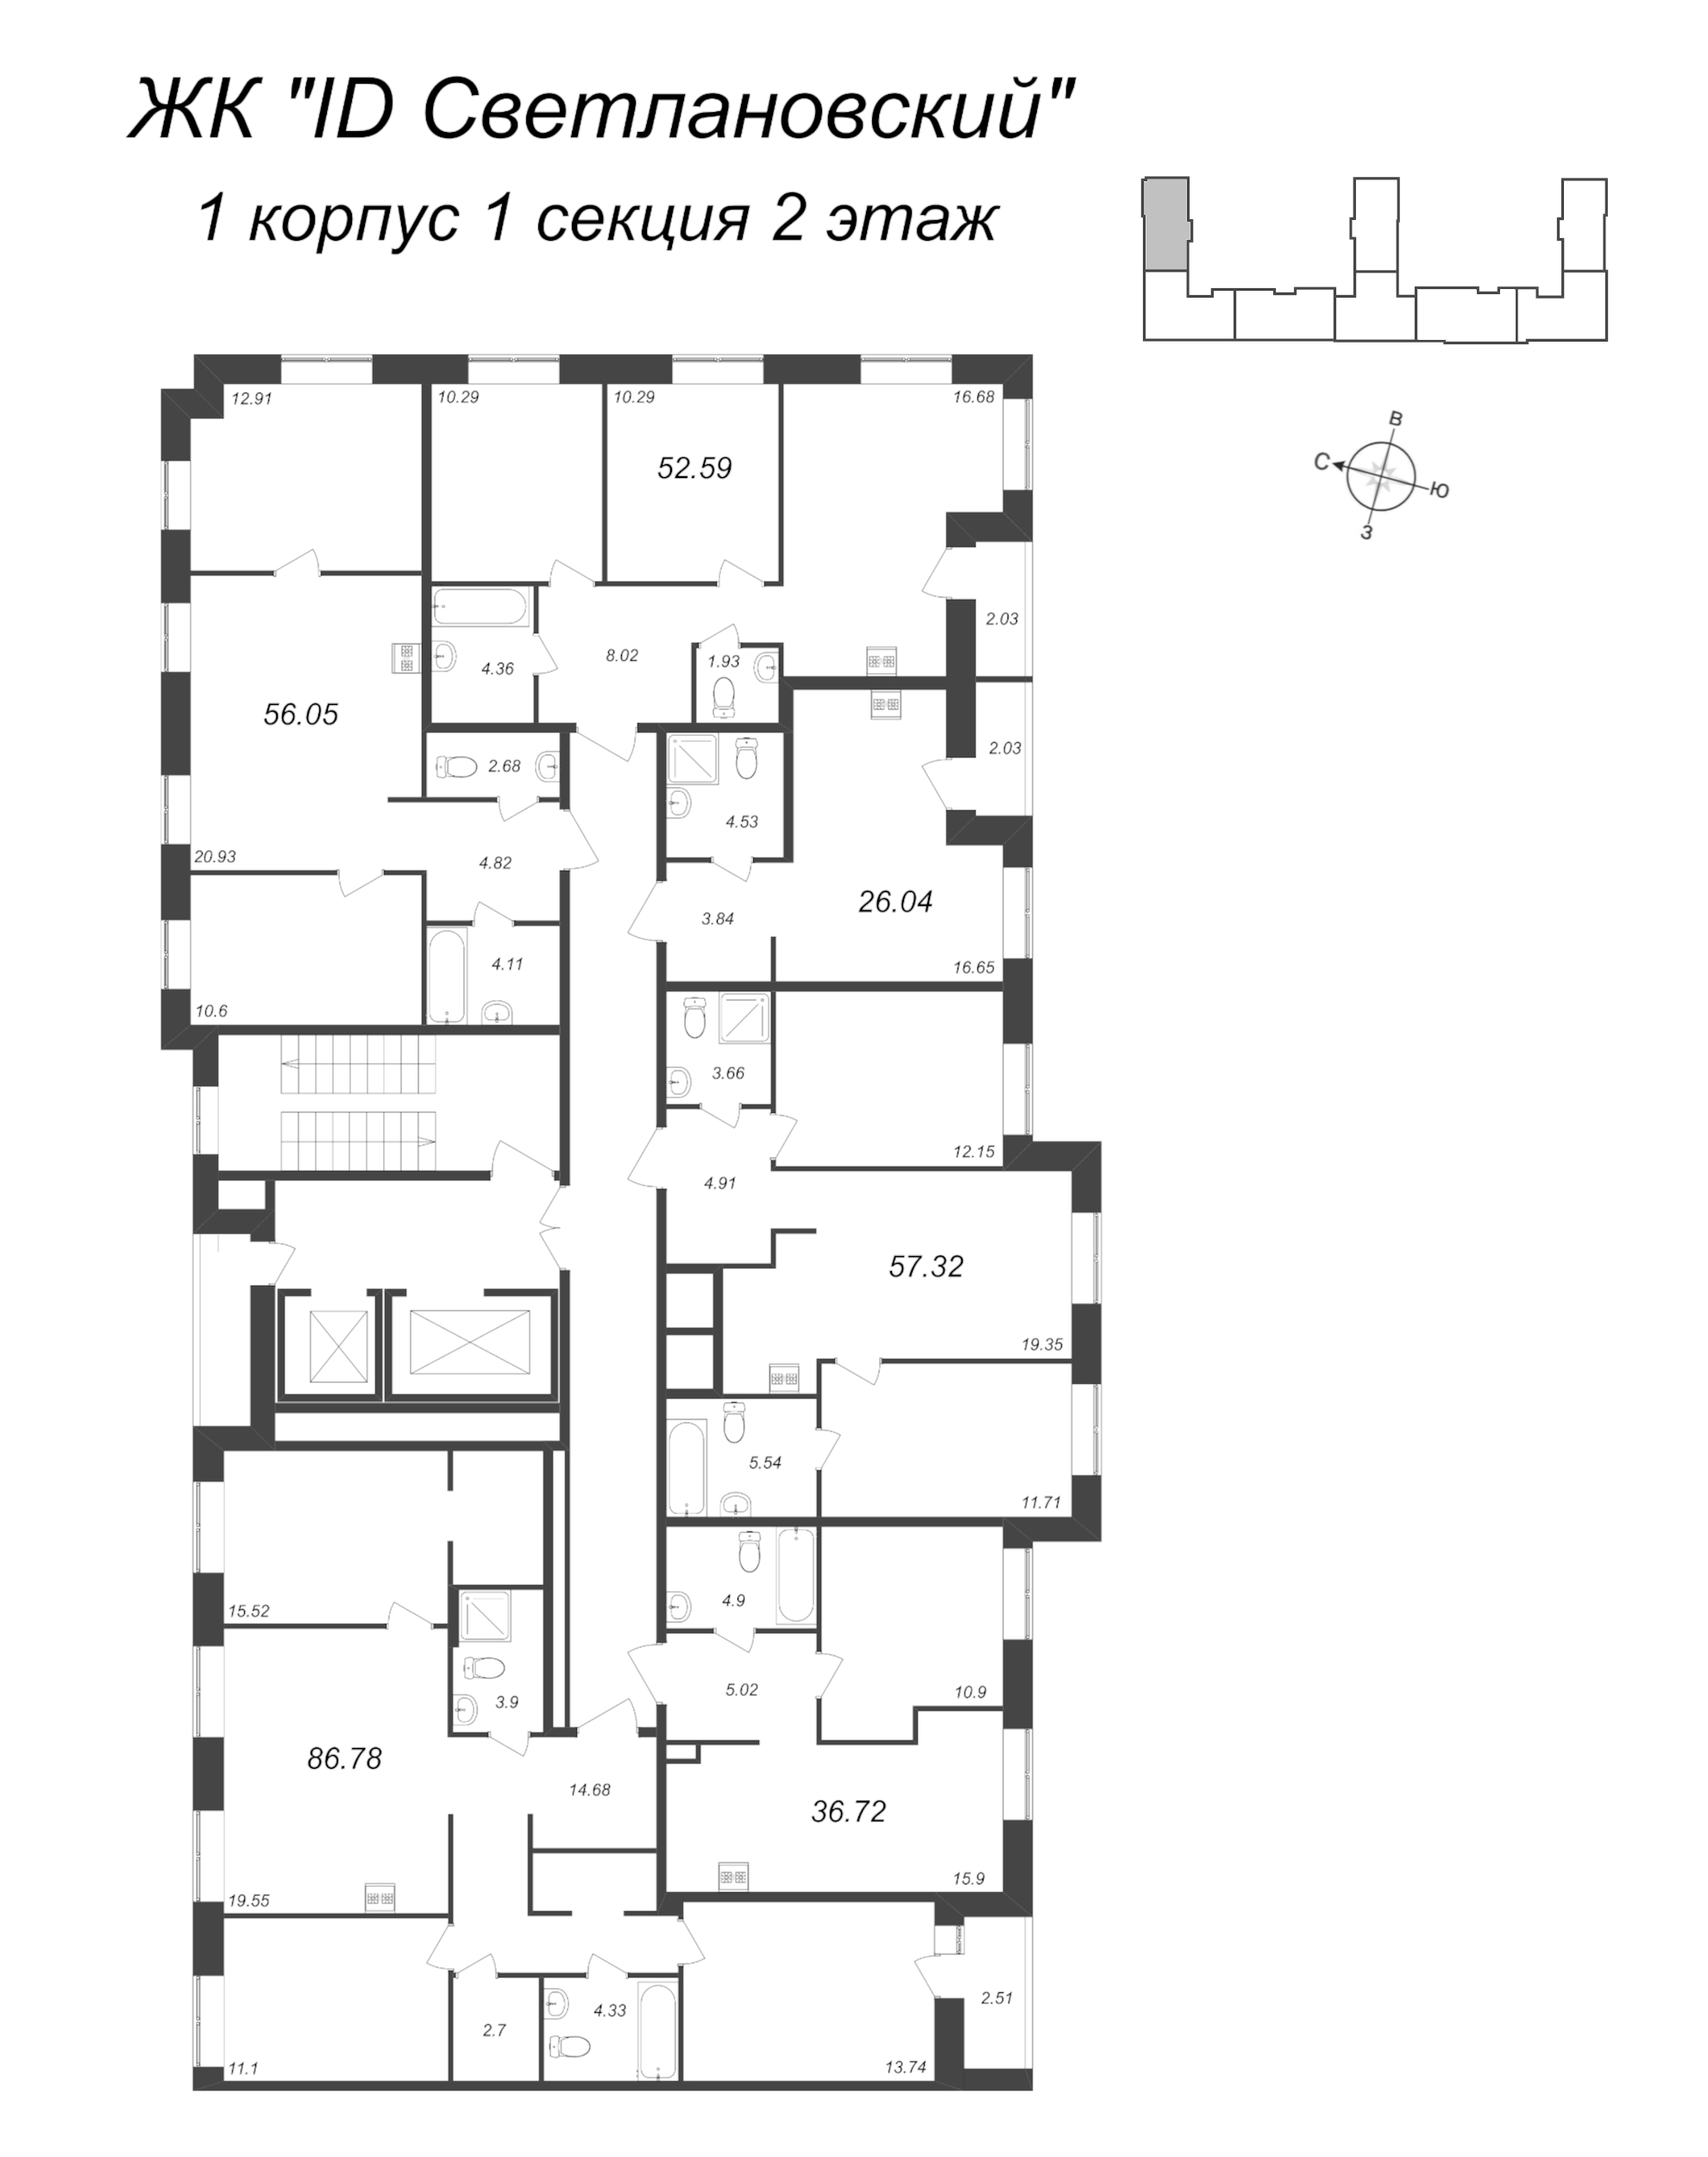 4-комнатная (Евро) квартира, 86.78 м² в ЖК "ID Svetlanovskiy" - планировка этажа